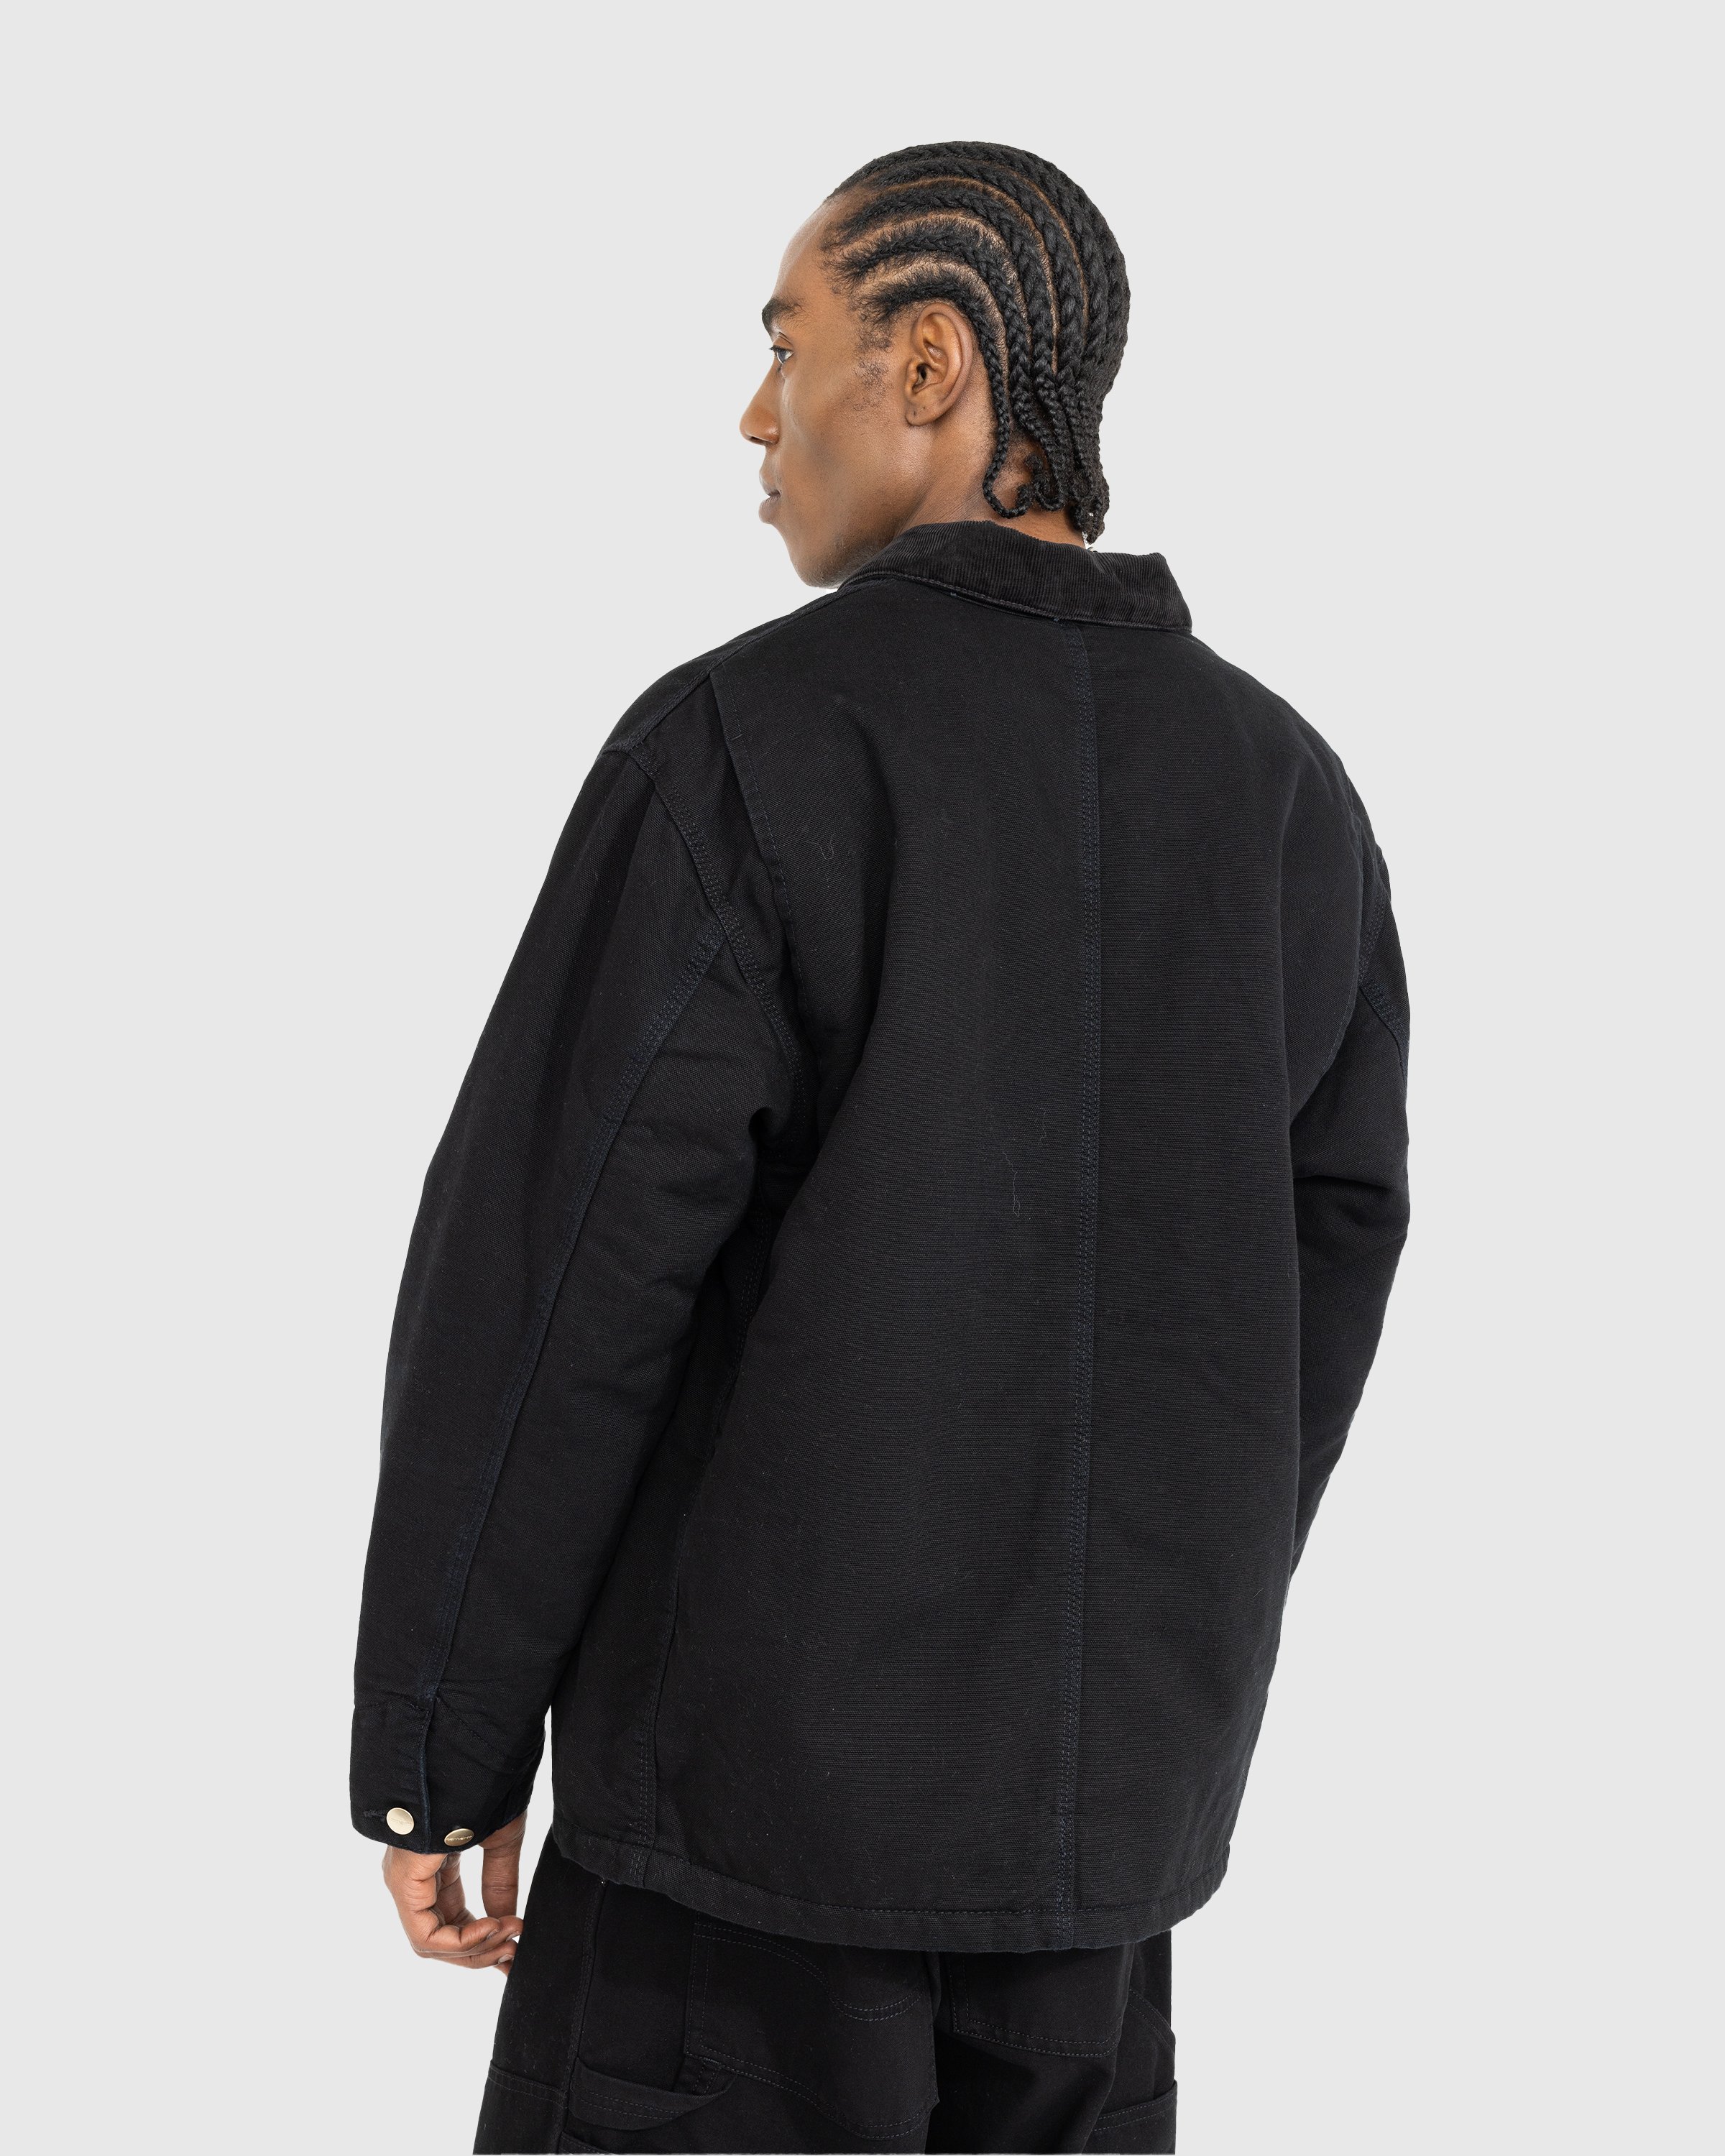 Carhartt WIP - OG Chore Coat Black/Aged Canvas - Clothing - Black - Image 3